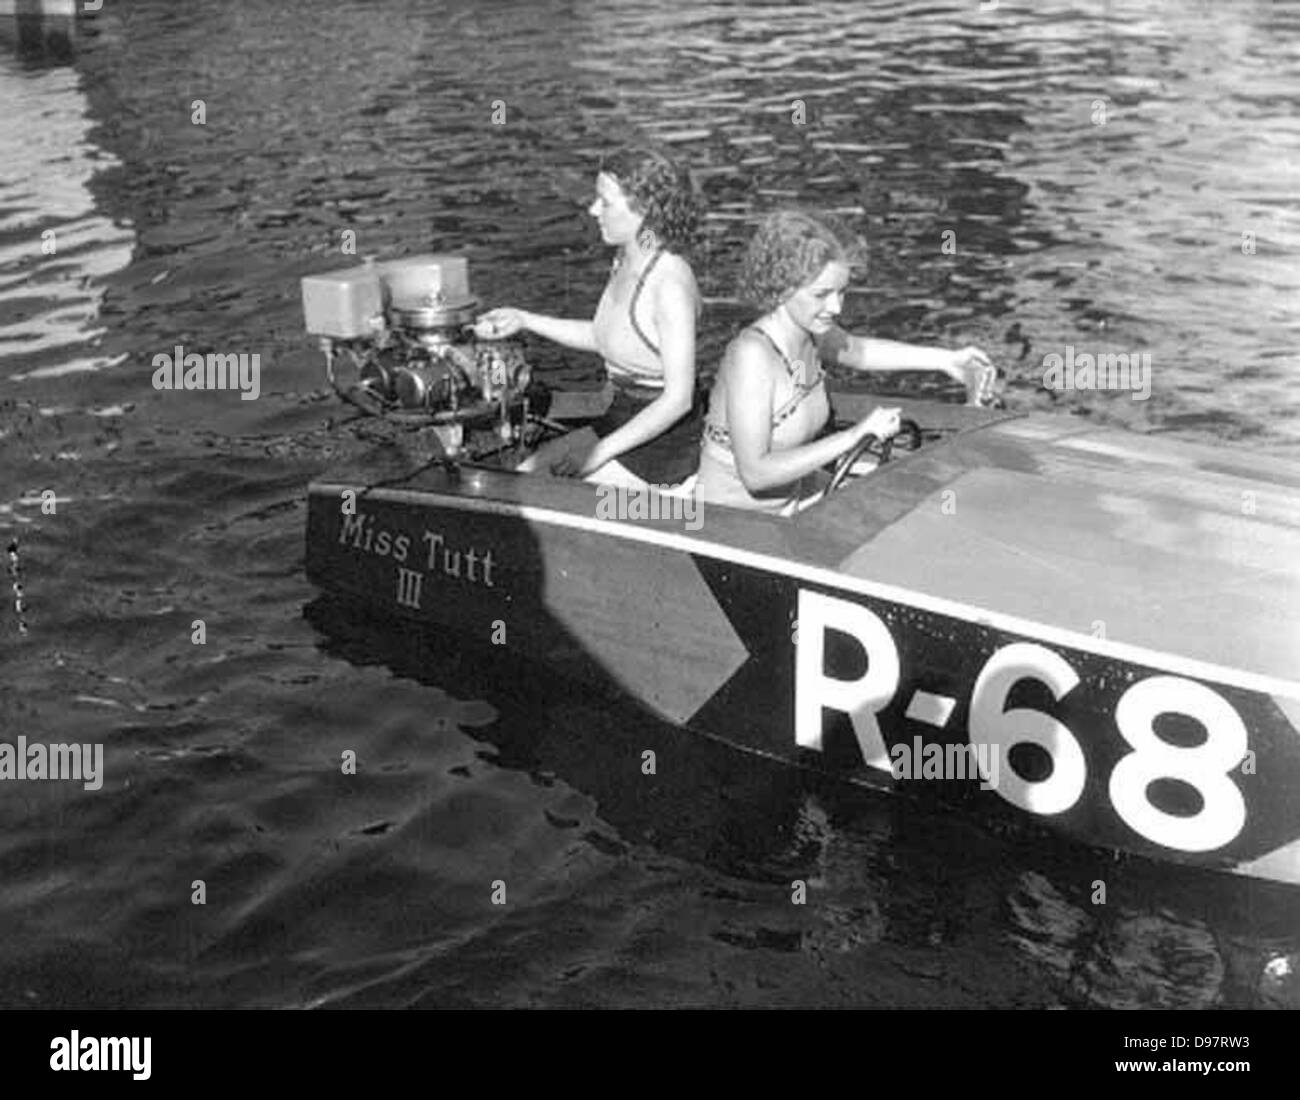 Due donne in un piccolo motoscafo su un lago, avviando il motore, probabilmente stato di Washington Foto Stock